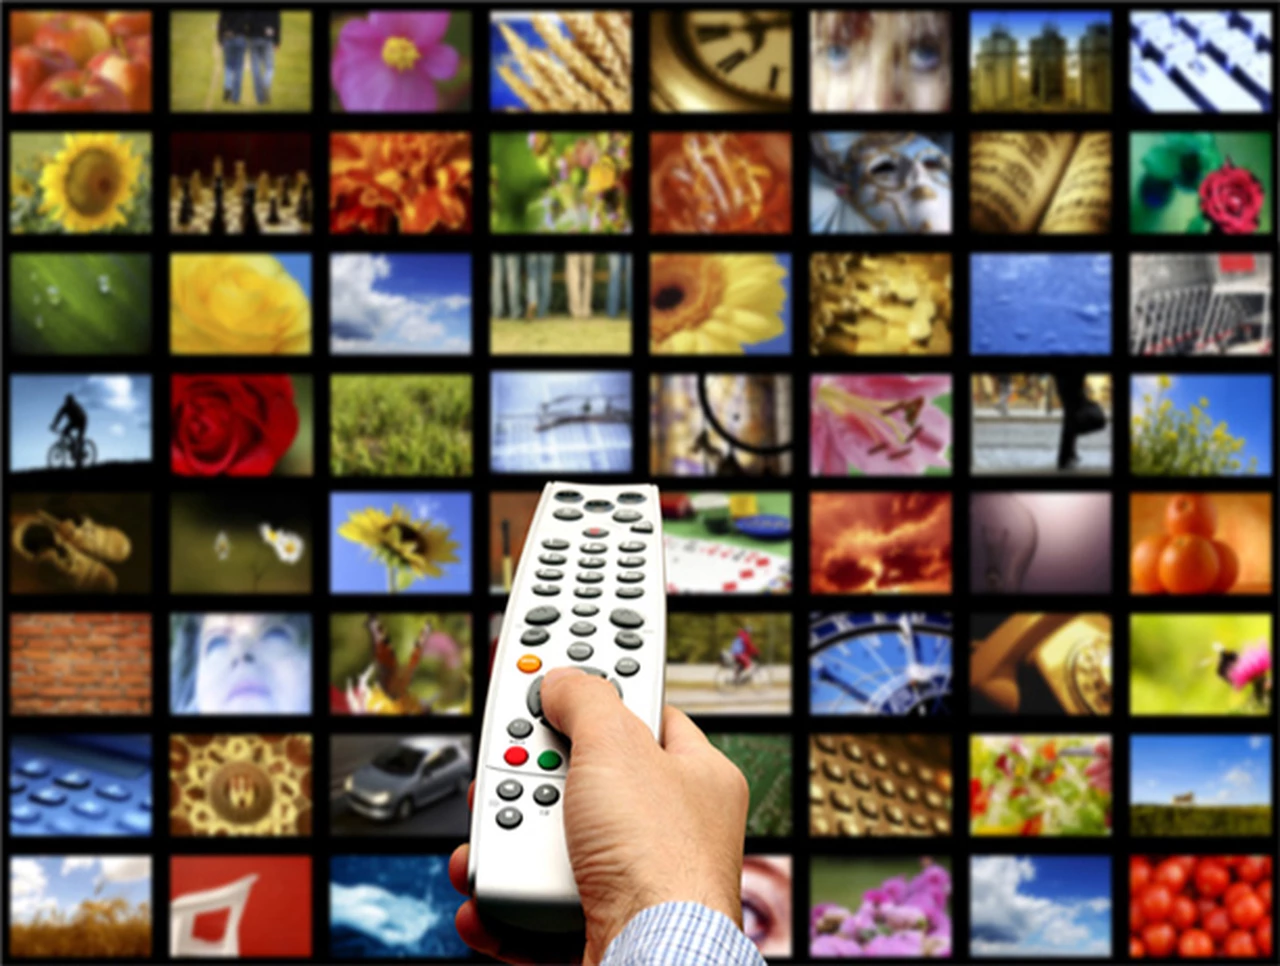 La televisión paga continuará creciendo más allá de los cambios en los comportamientos de consumo